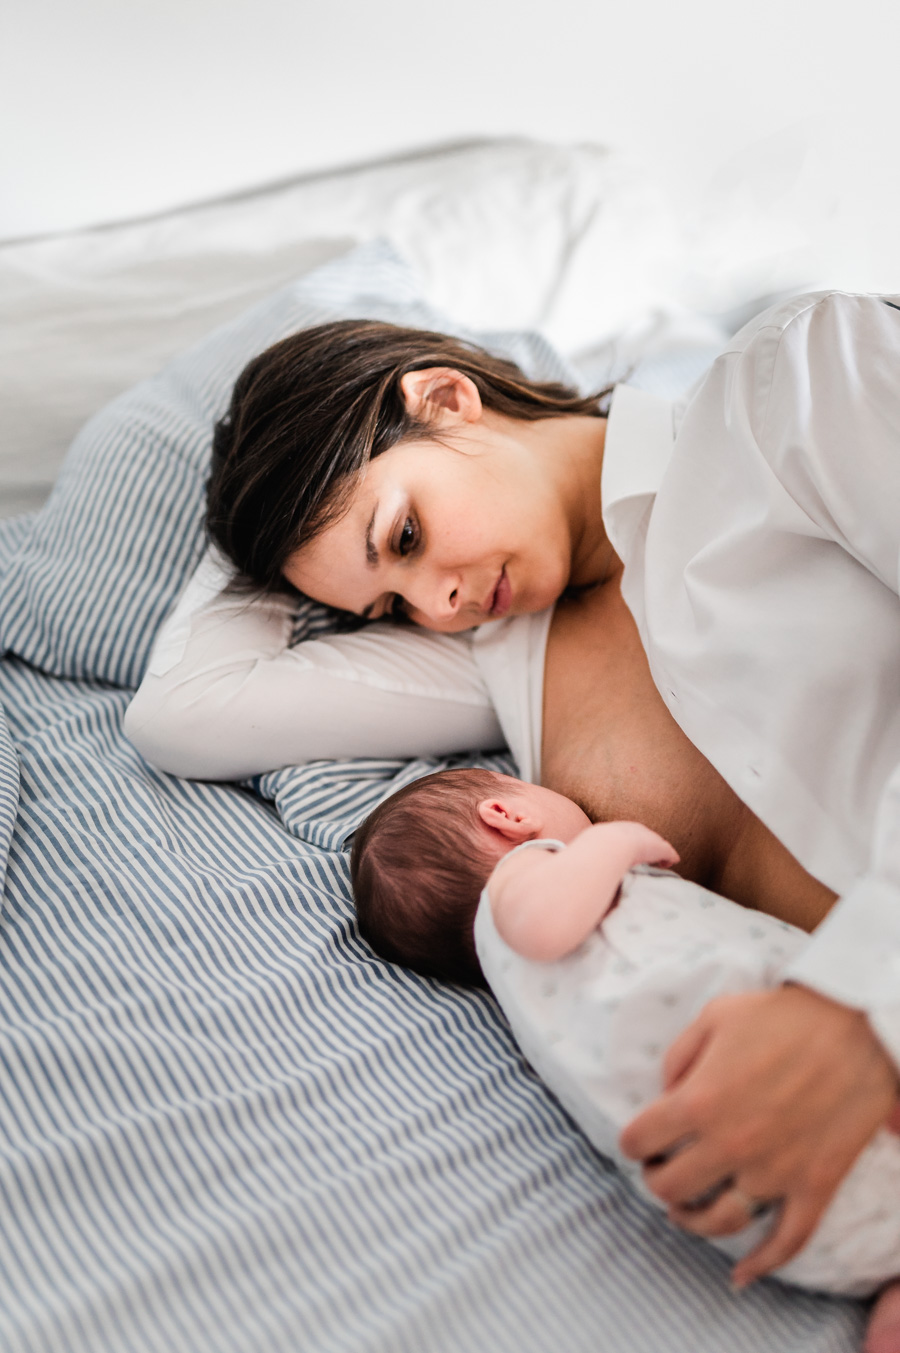 séance photo avec un bébé à saumur jean-christophe coutand-meheut